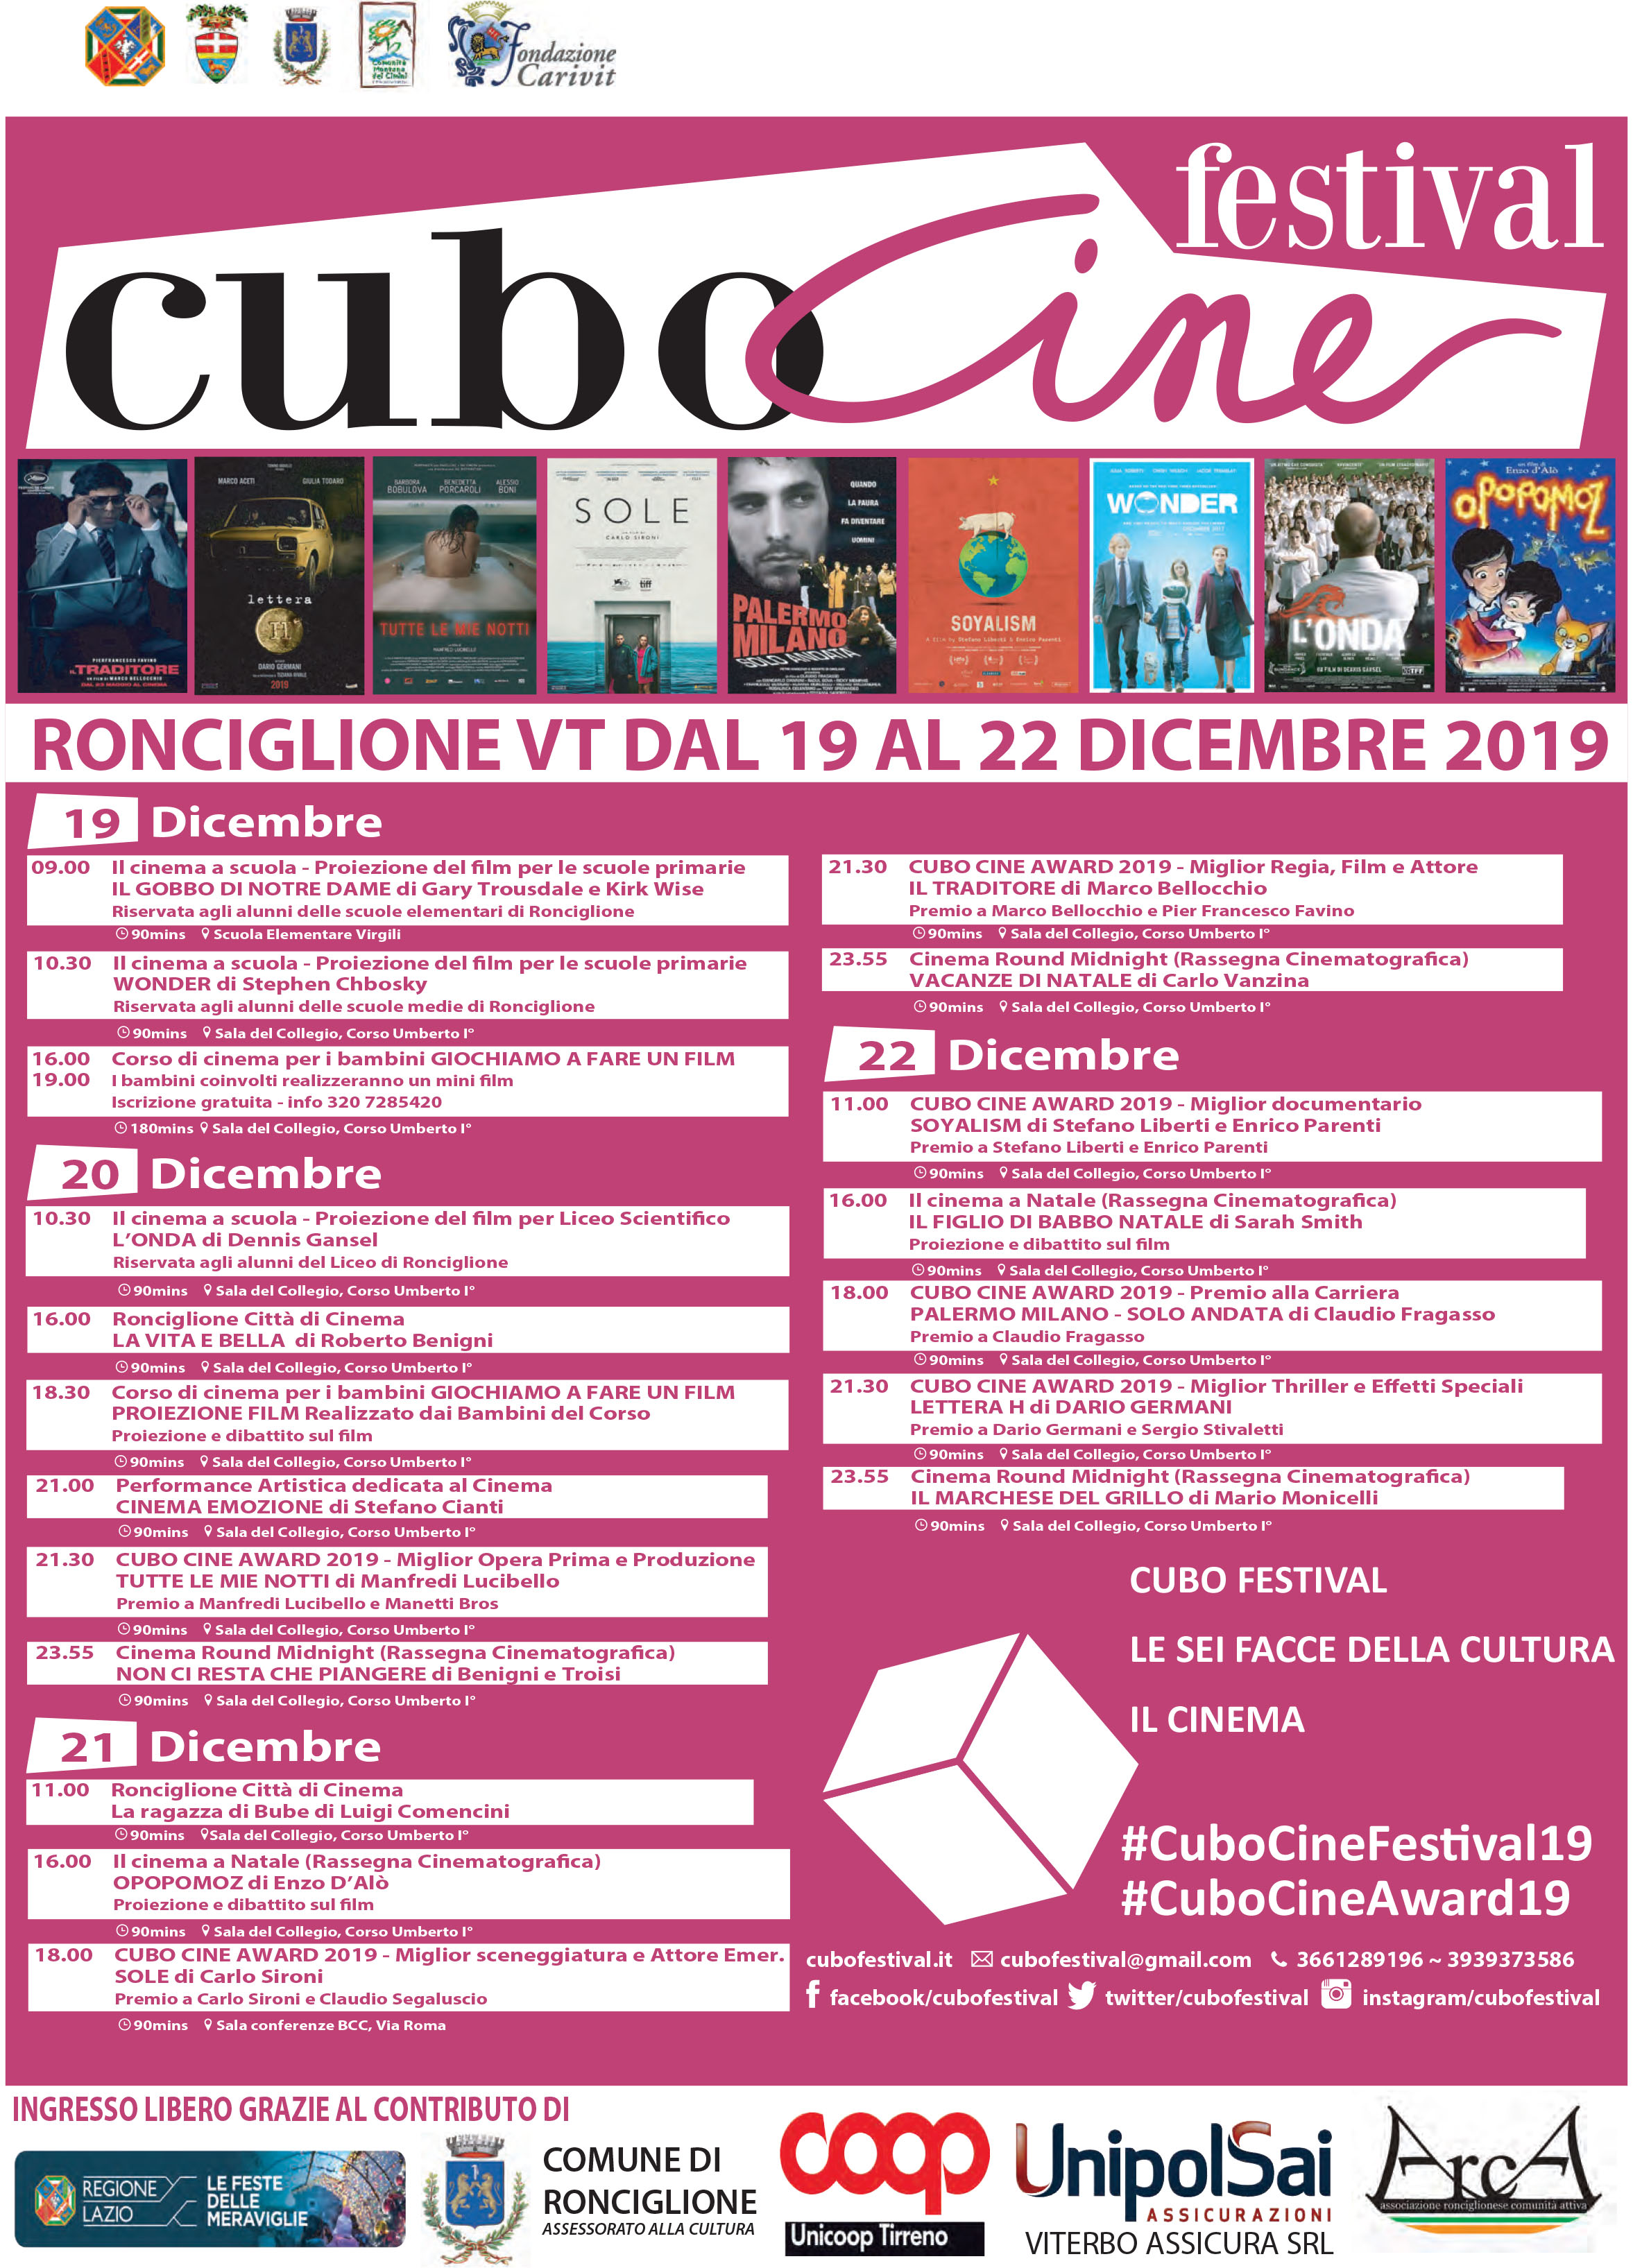 Da oggi al 22 dicembre nella splendida cornice di Ronciglione si svolgerà la nuova edizione di “Cubo Cine Festival 2019”, contenitore culturale dedicato al cinema e l’audiovisivo.  